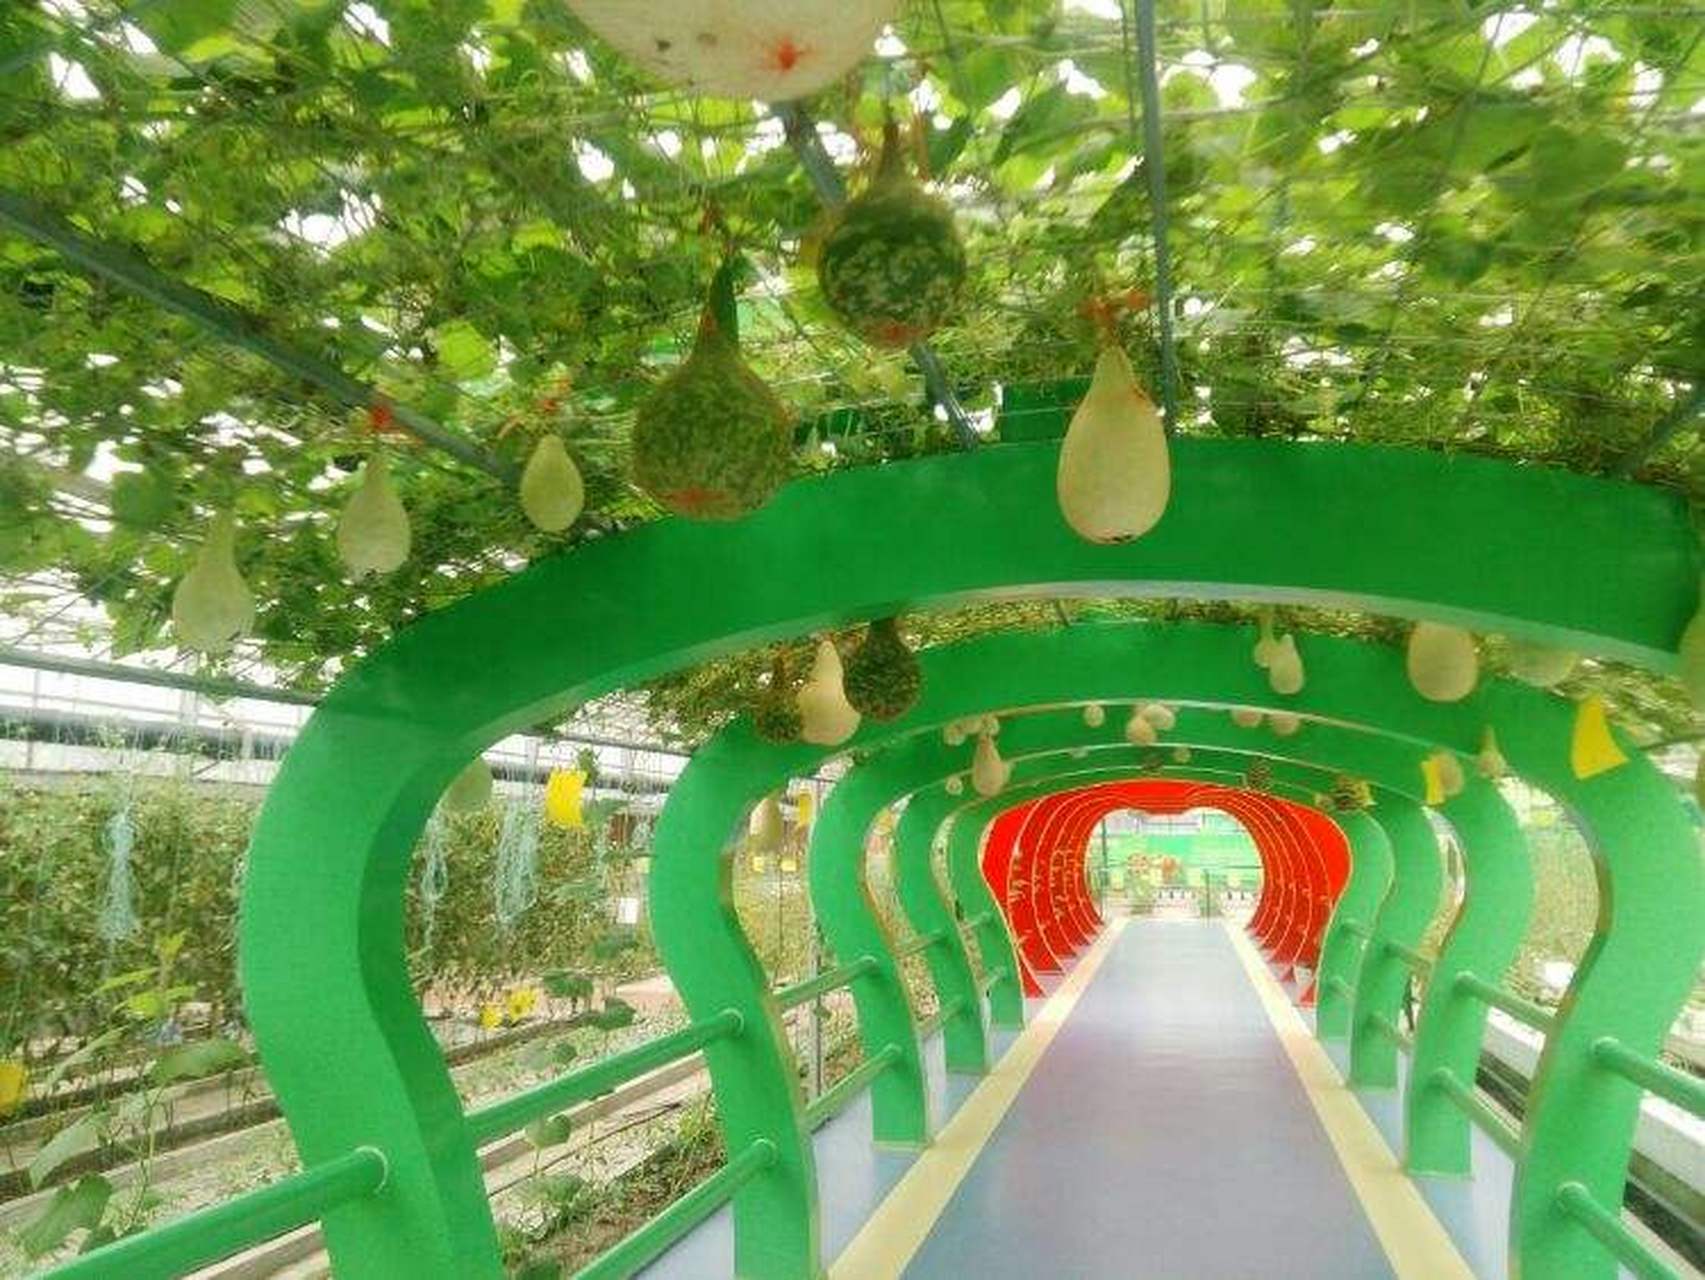 星耀泉城遇见济南#雪野现代农业科技示范园,又称雪野农博园,位于山东